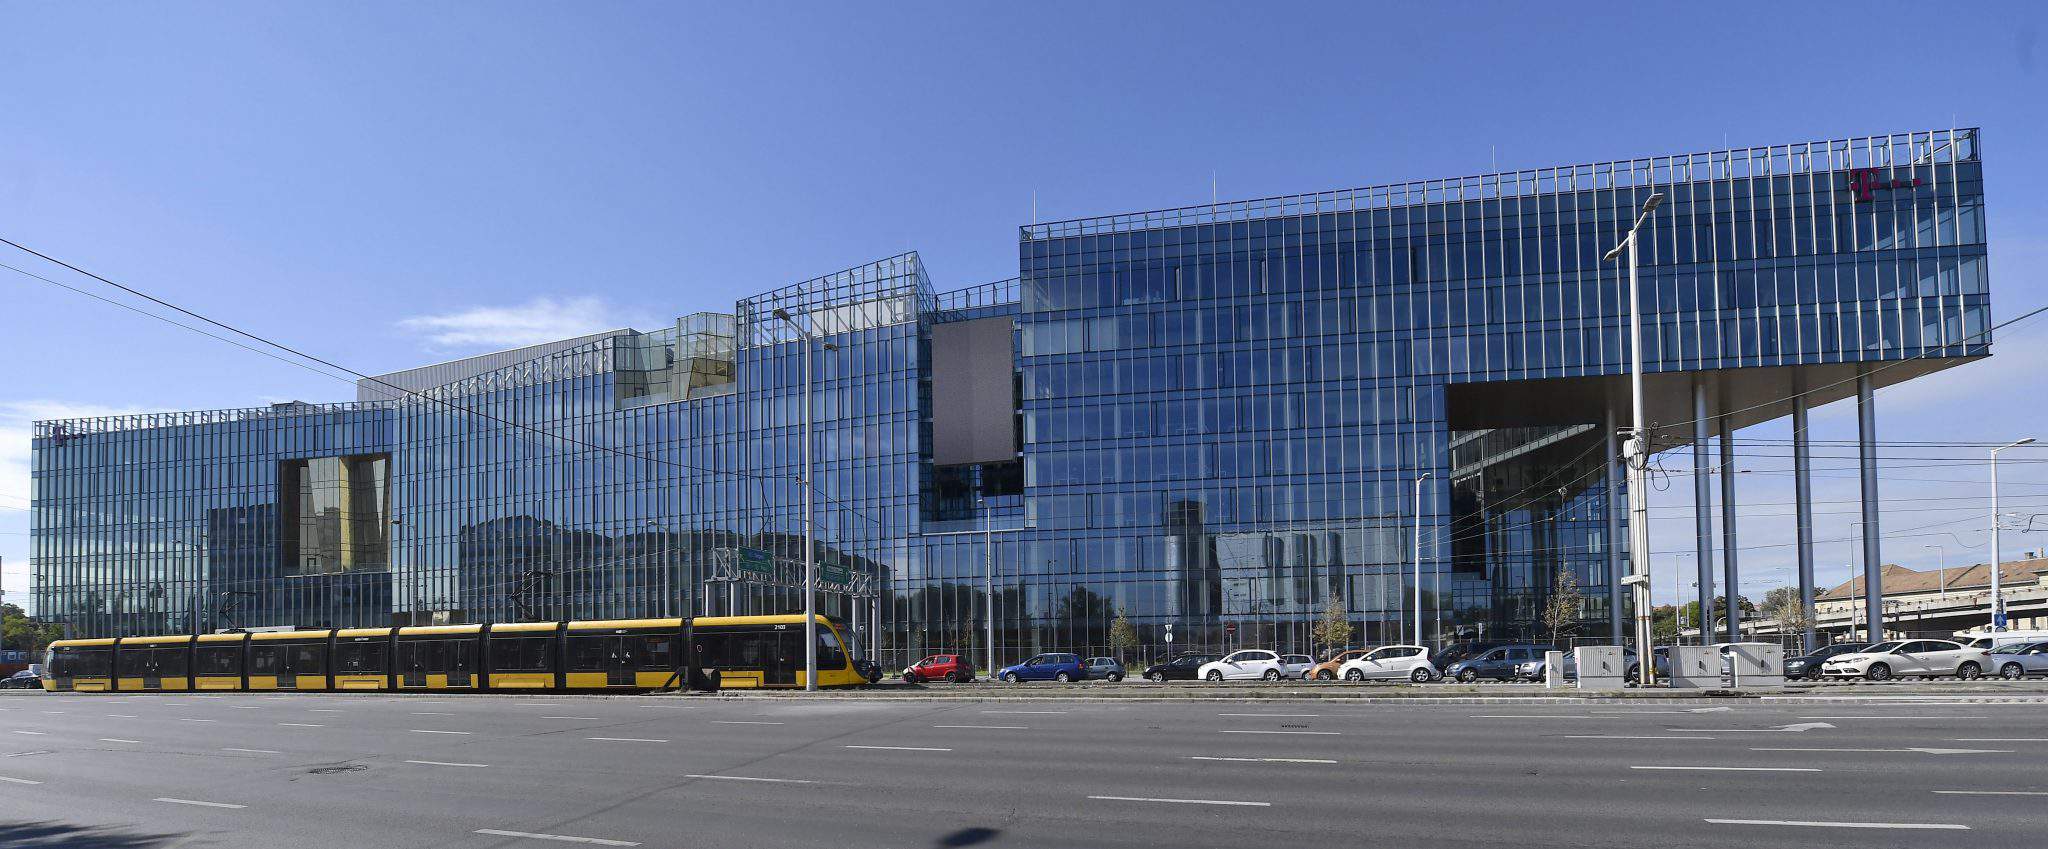 Wing gab die Fertigstellung der 50 Milliarden Forint (154.5 Millionen Euro) teuren Zentrale von Magyar Telekom und T-Systems bekannt